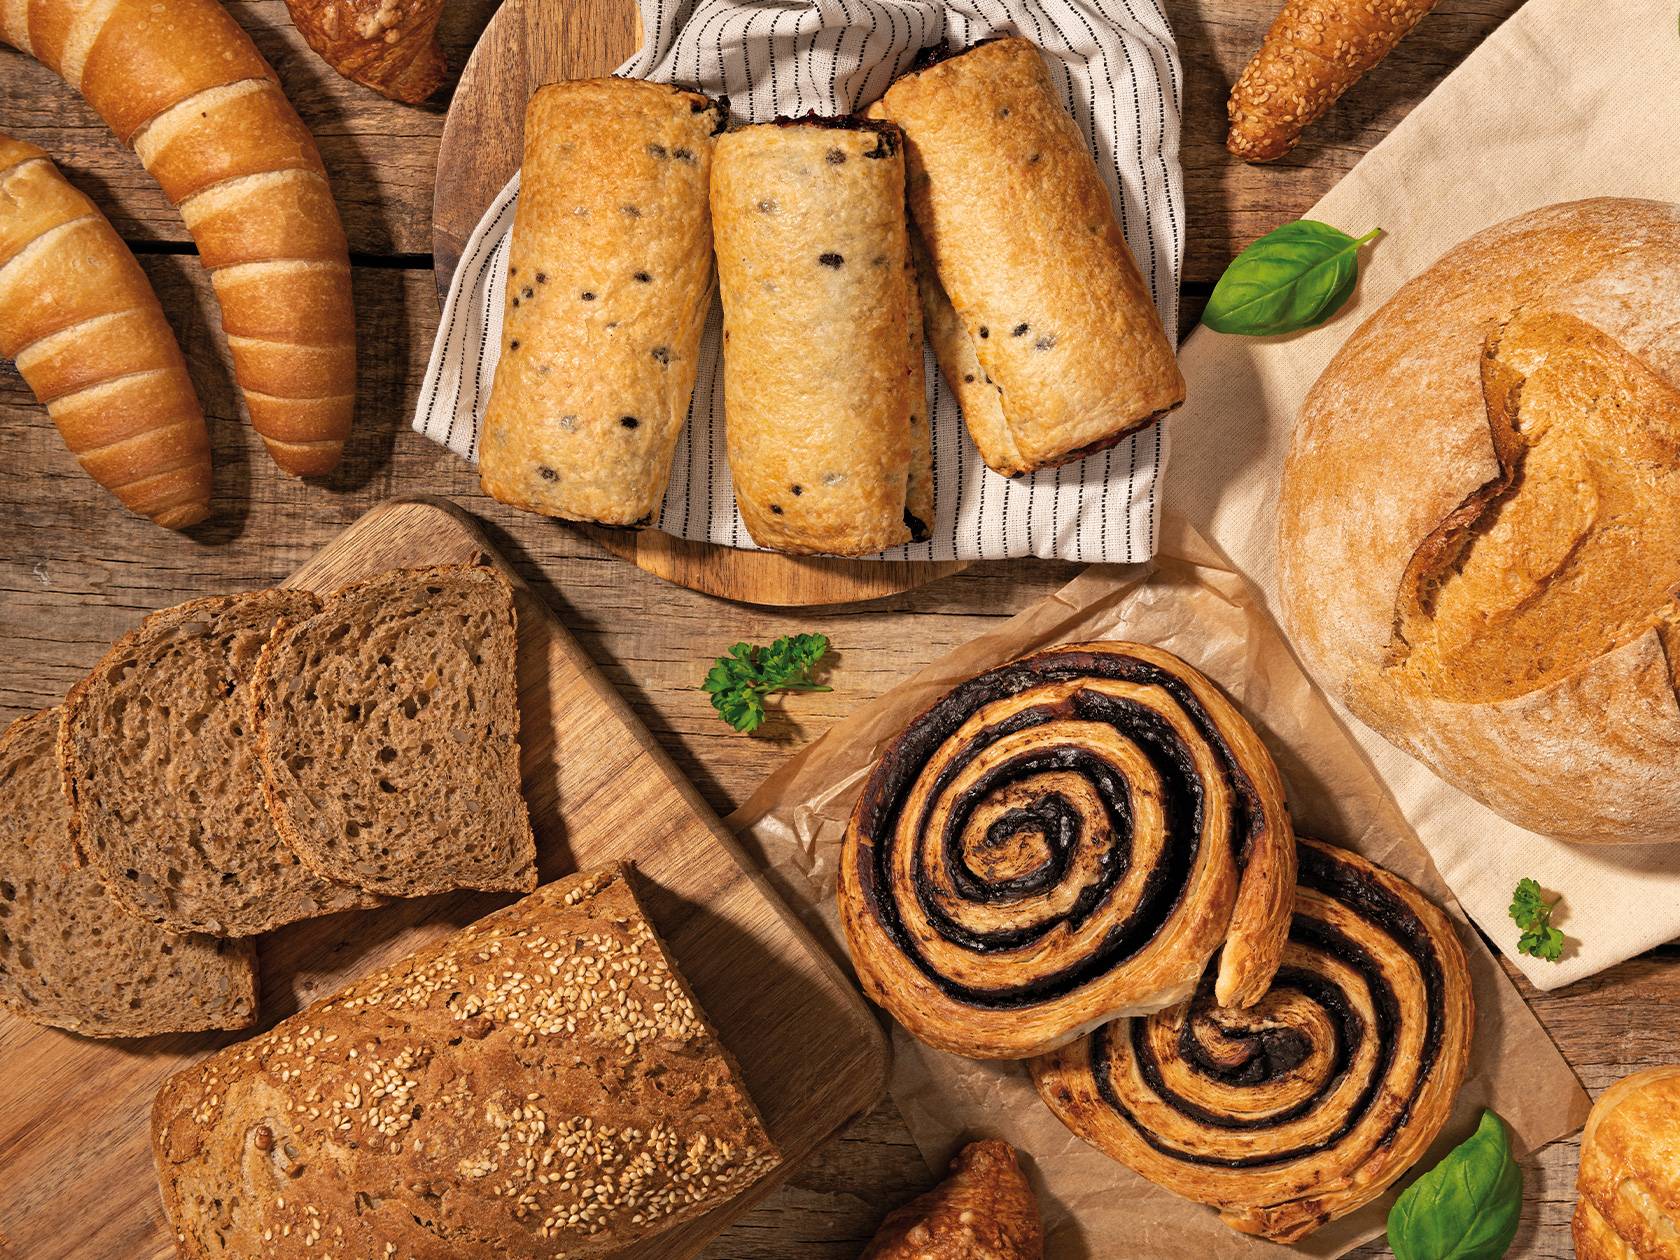 Féláron kapható pékáru a Lidl országos élelmiszermentő akciója keretében